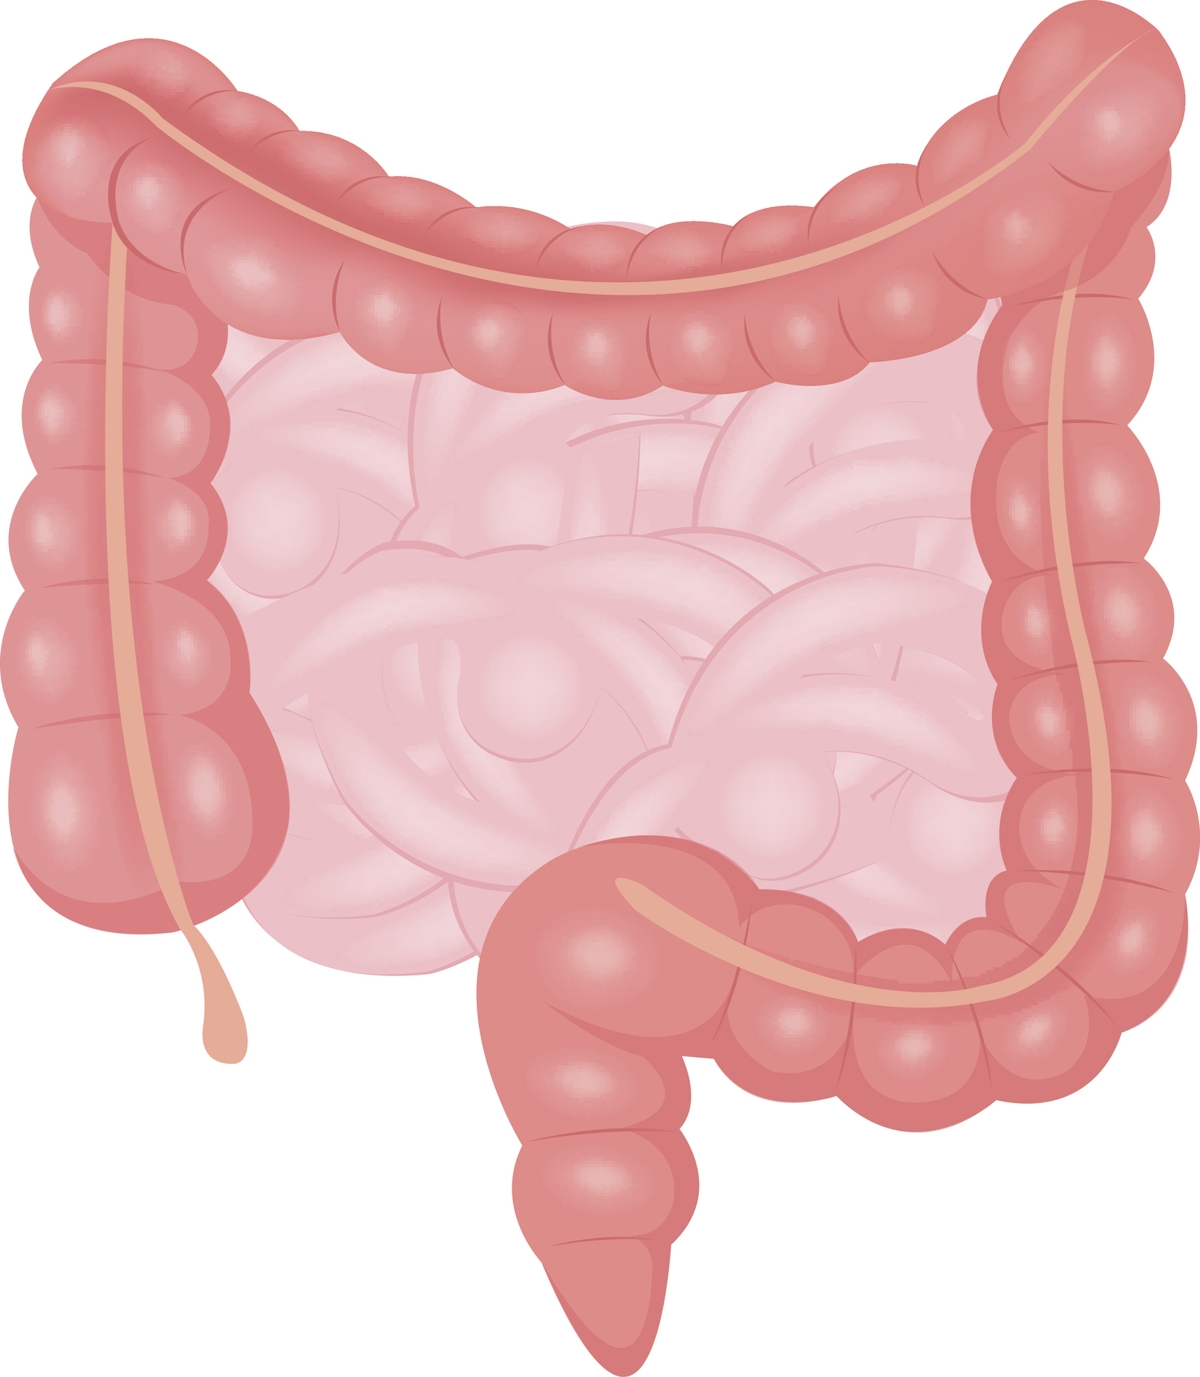 Large Intestine Anatomy Bodytomy